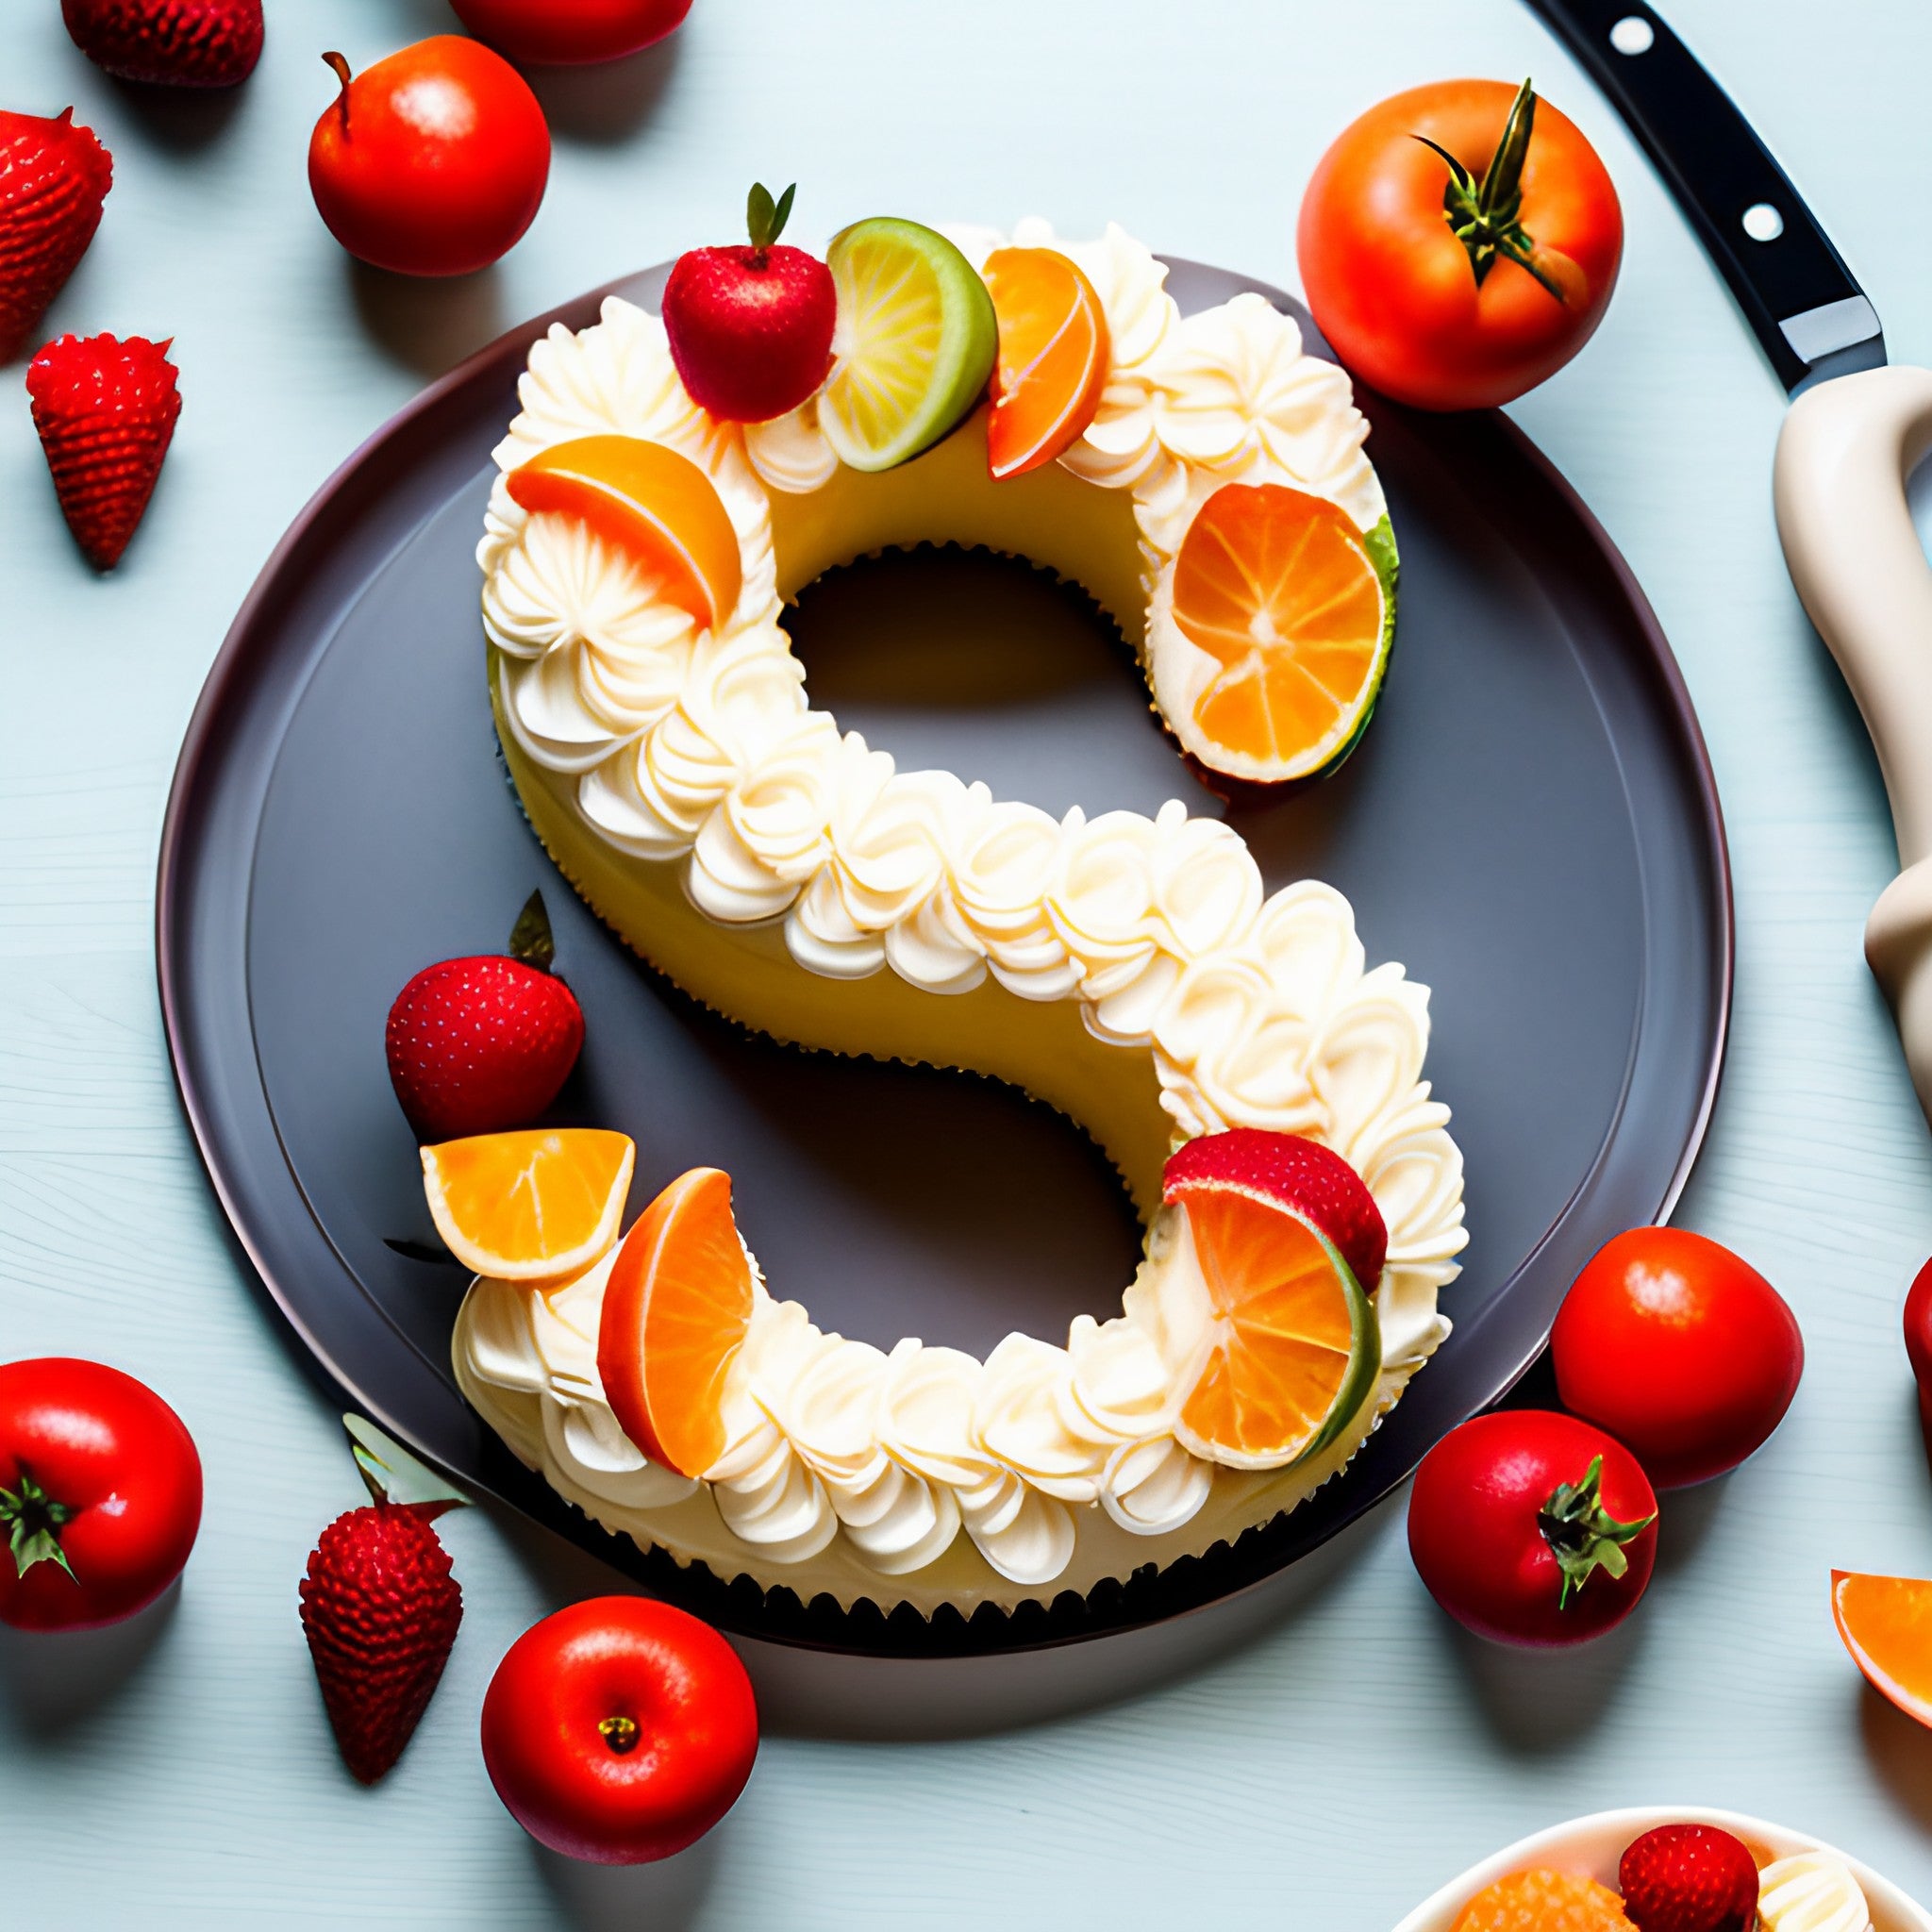 Number Naked Cake with Fruits - Da Cakes Houston